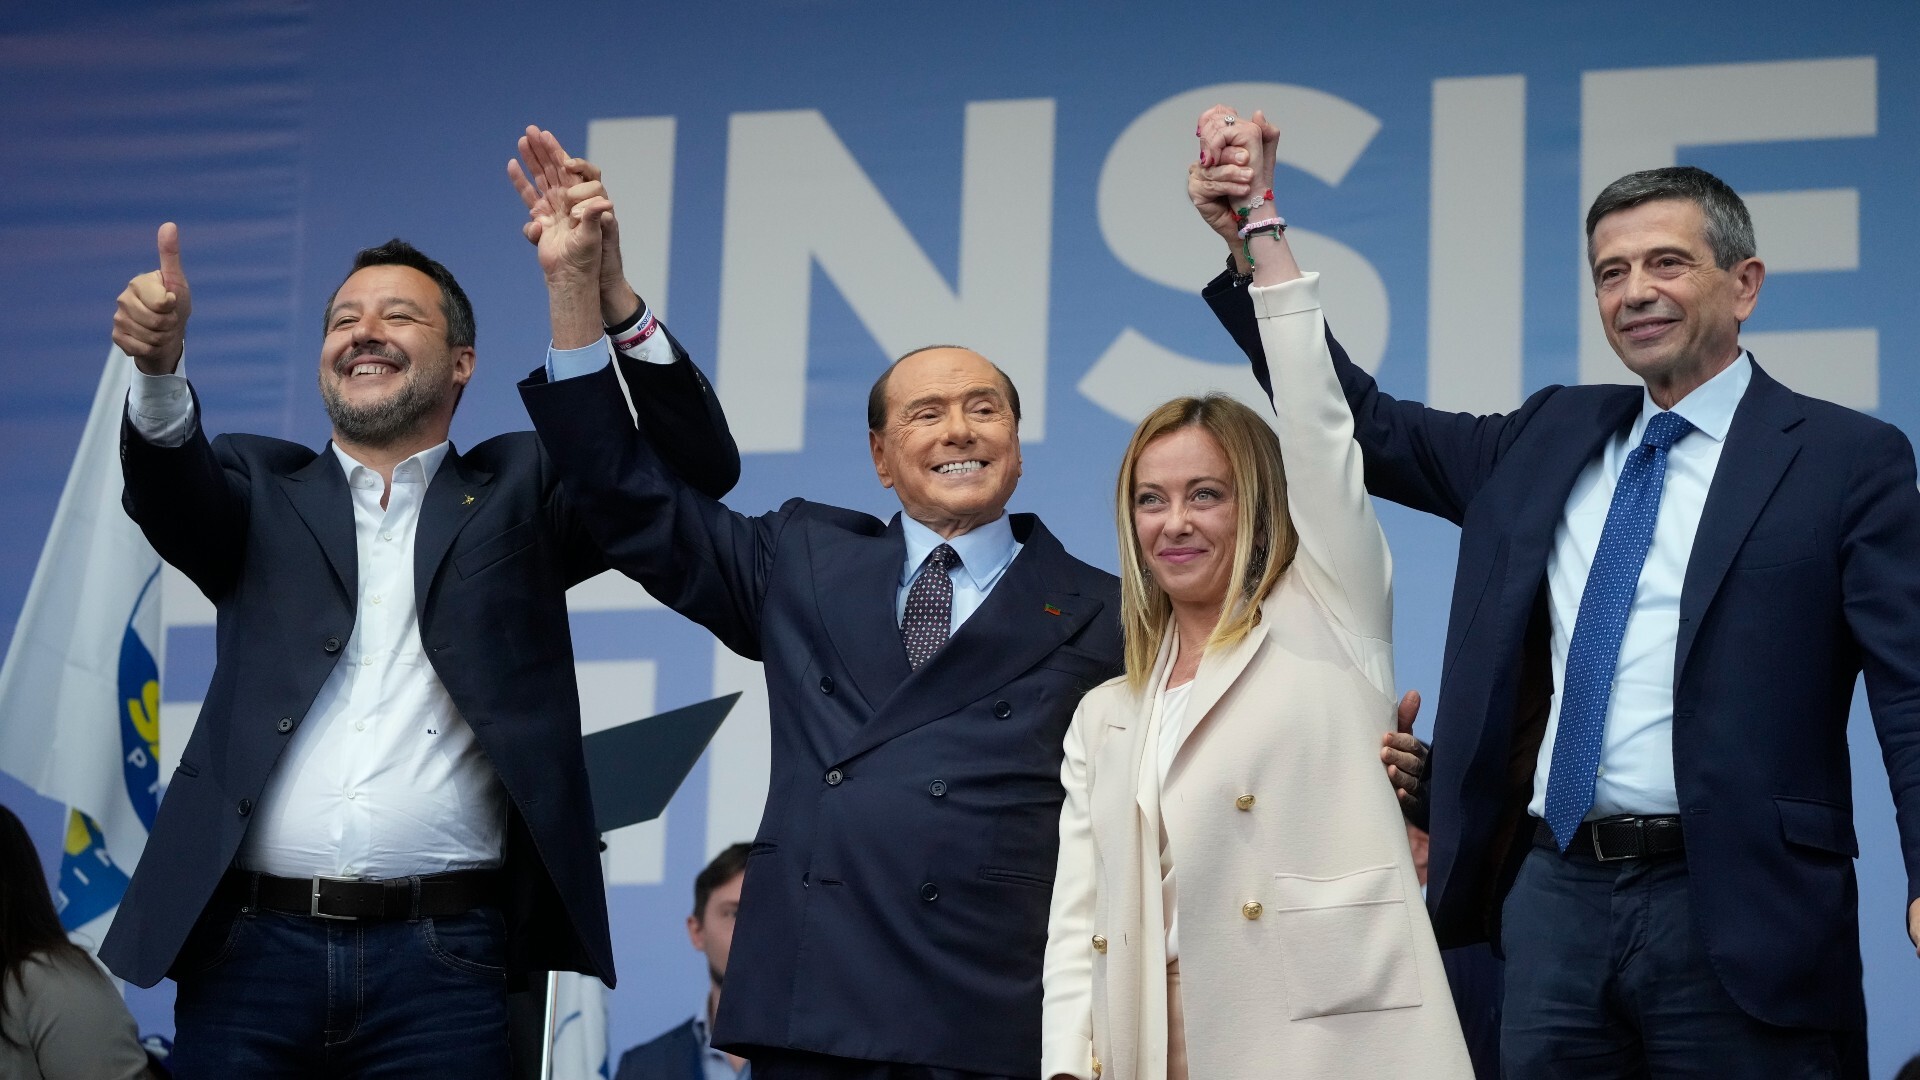 Élections en Italie |  Bruxelles regarde avec inquiétude la possible victoire de l’extrême droite en Italie : « L’Europe a perdu le plaisir »